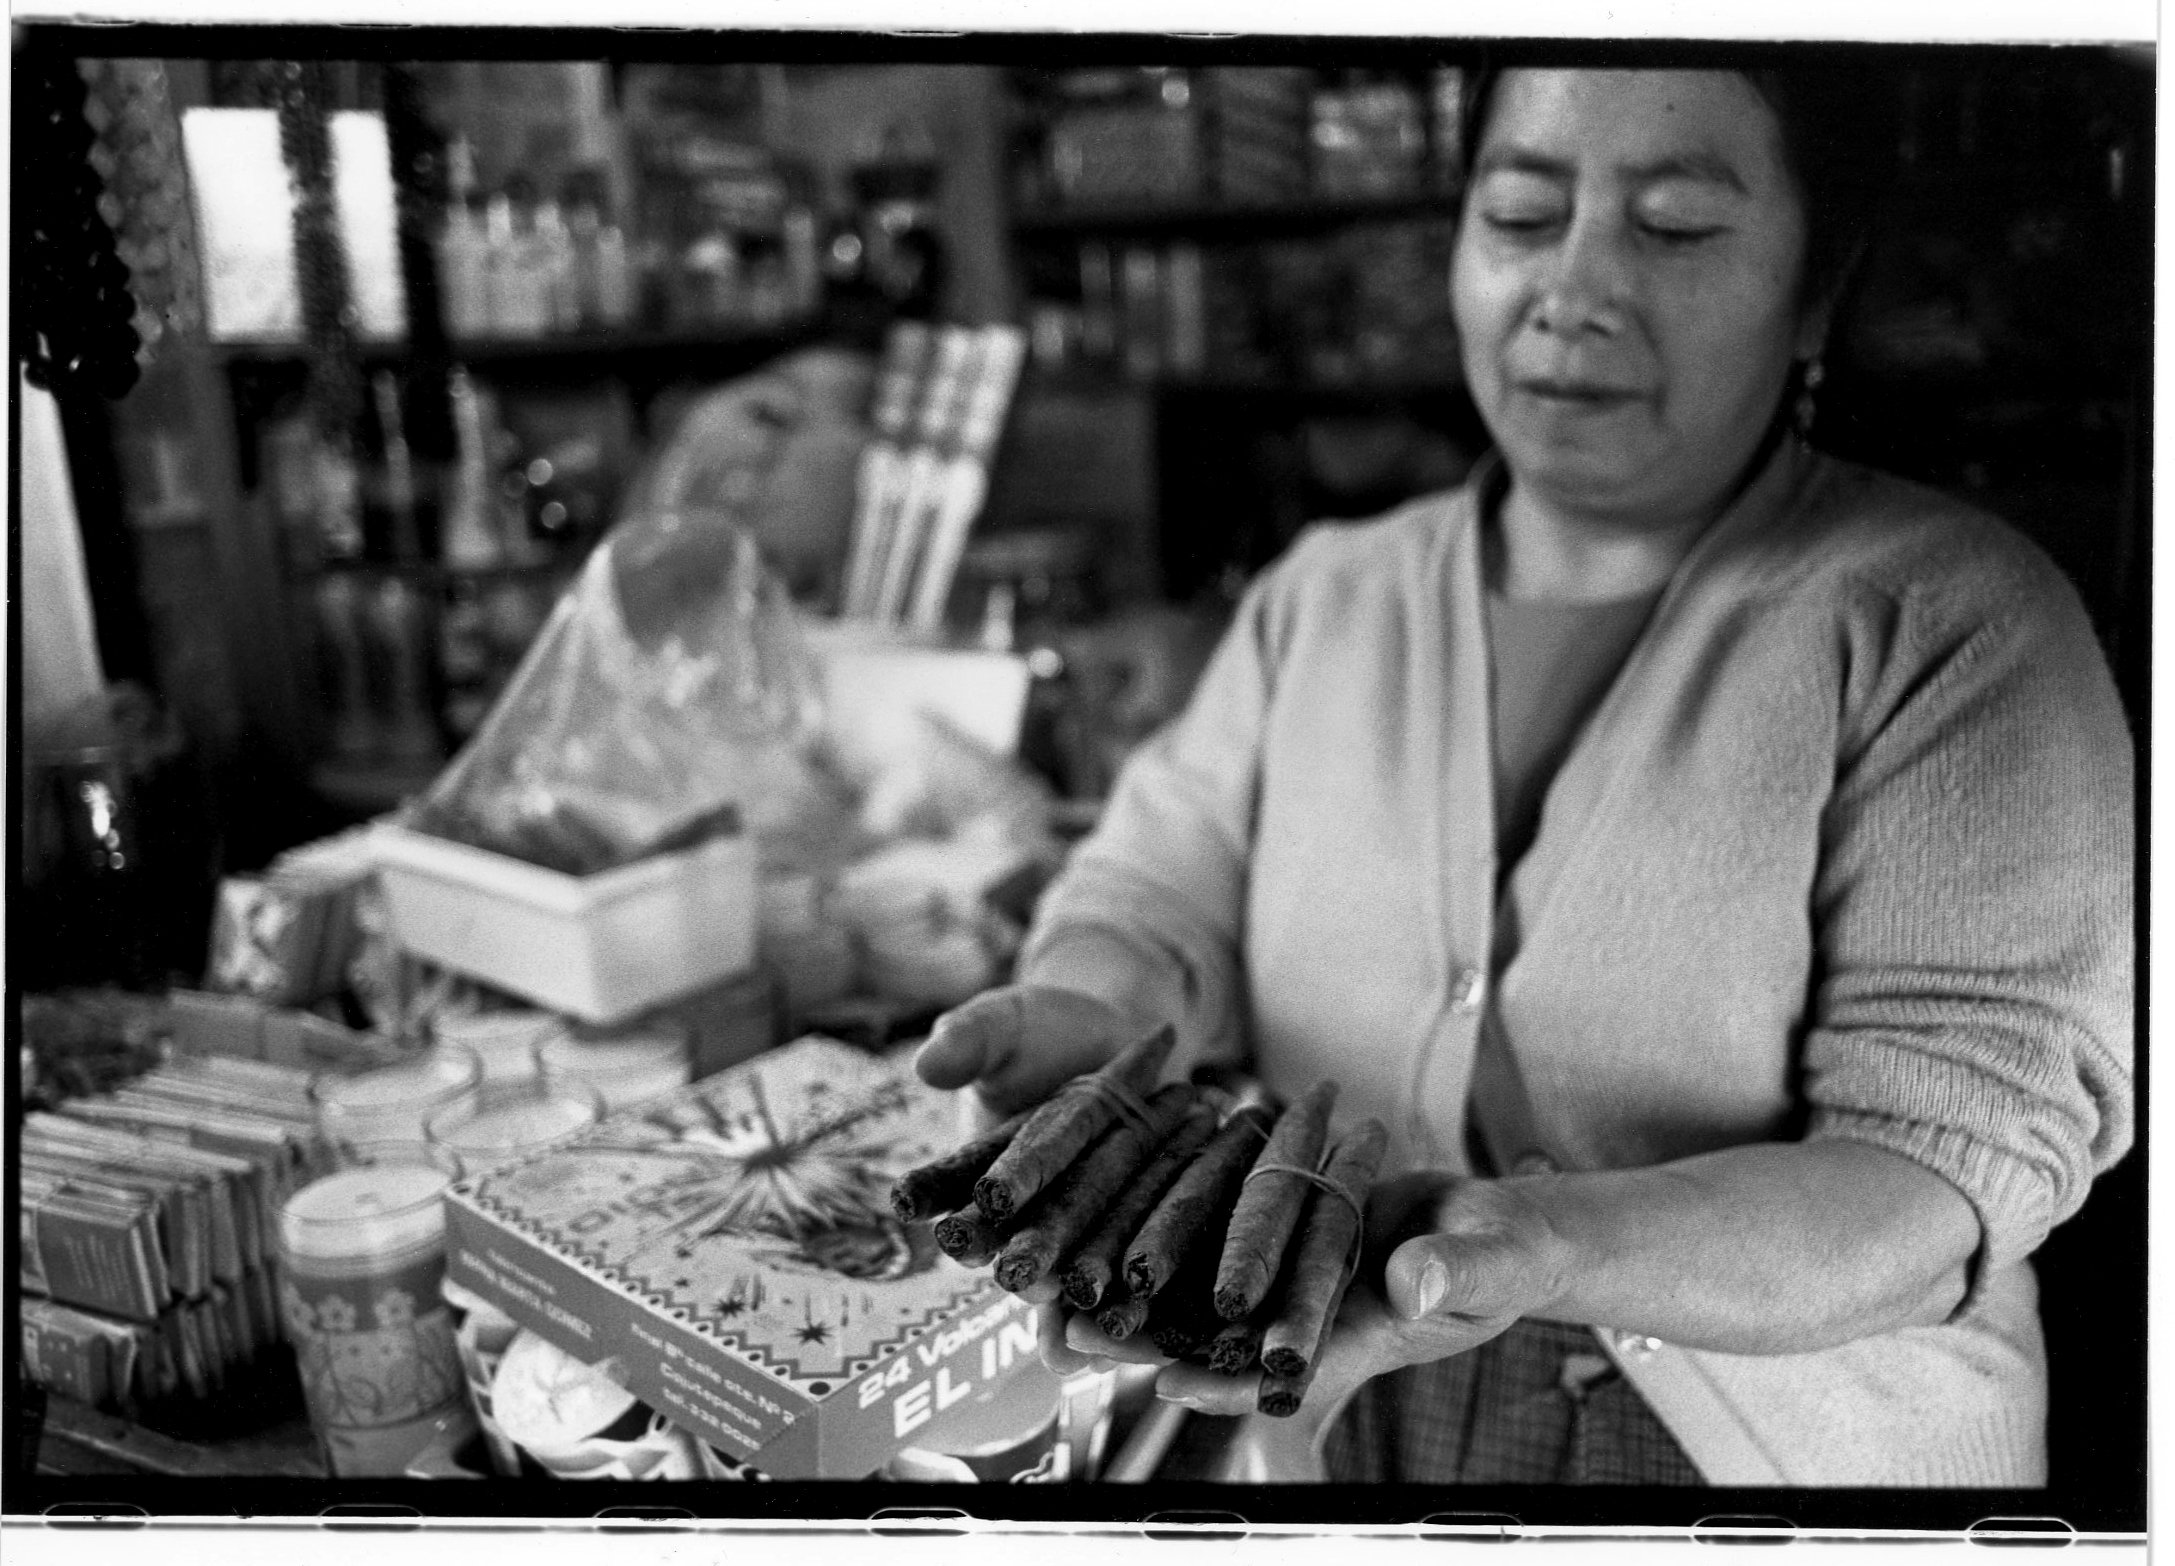  Tobacco puros for sale in market in San Cristobal de las Casas, Chiapas, Mexico 1998 